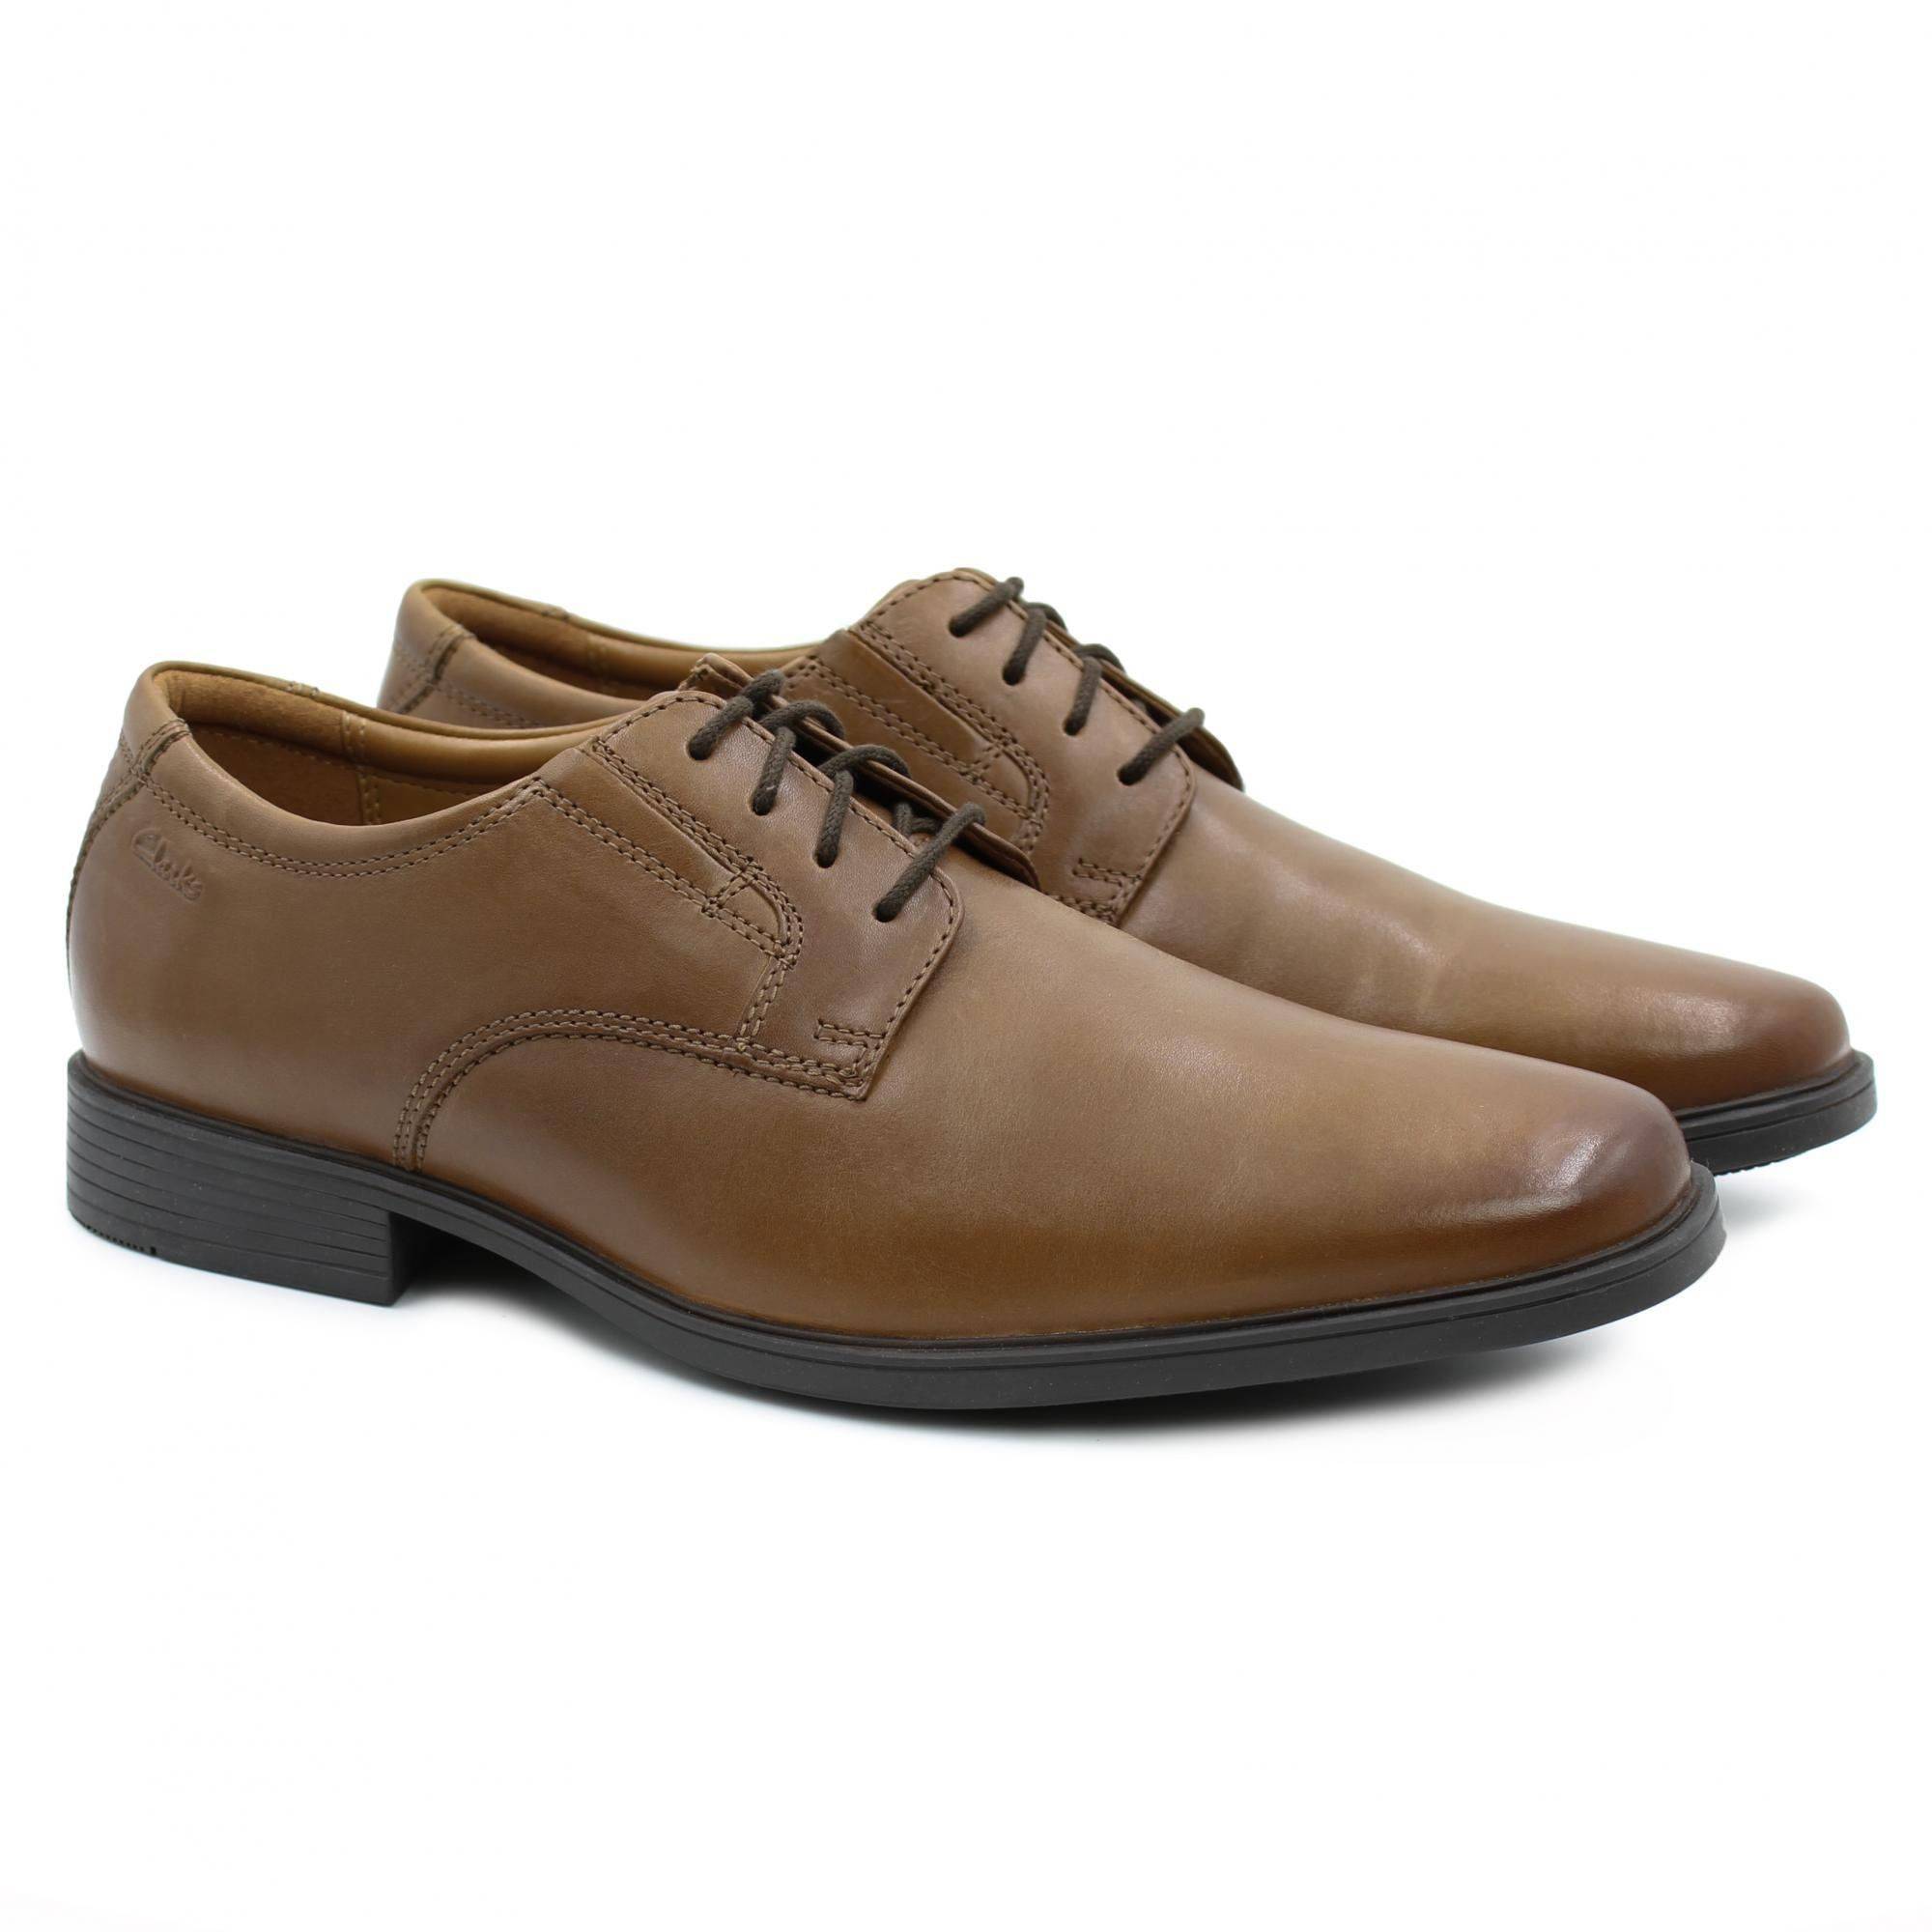 Купить Мужские дерби Clarks, цвет коричневый, Модель: Tilden Plain, арт:  26130097, цена от 9890 руб. в наличии в Официальном интернет-магазине обуви  и аксессуаров - SOHO